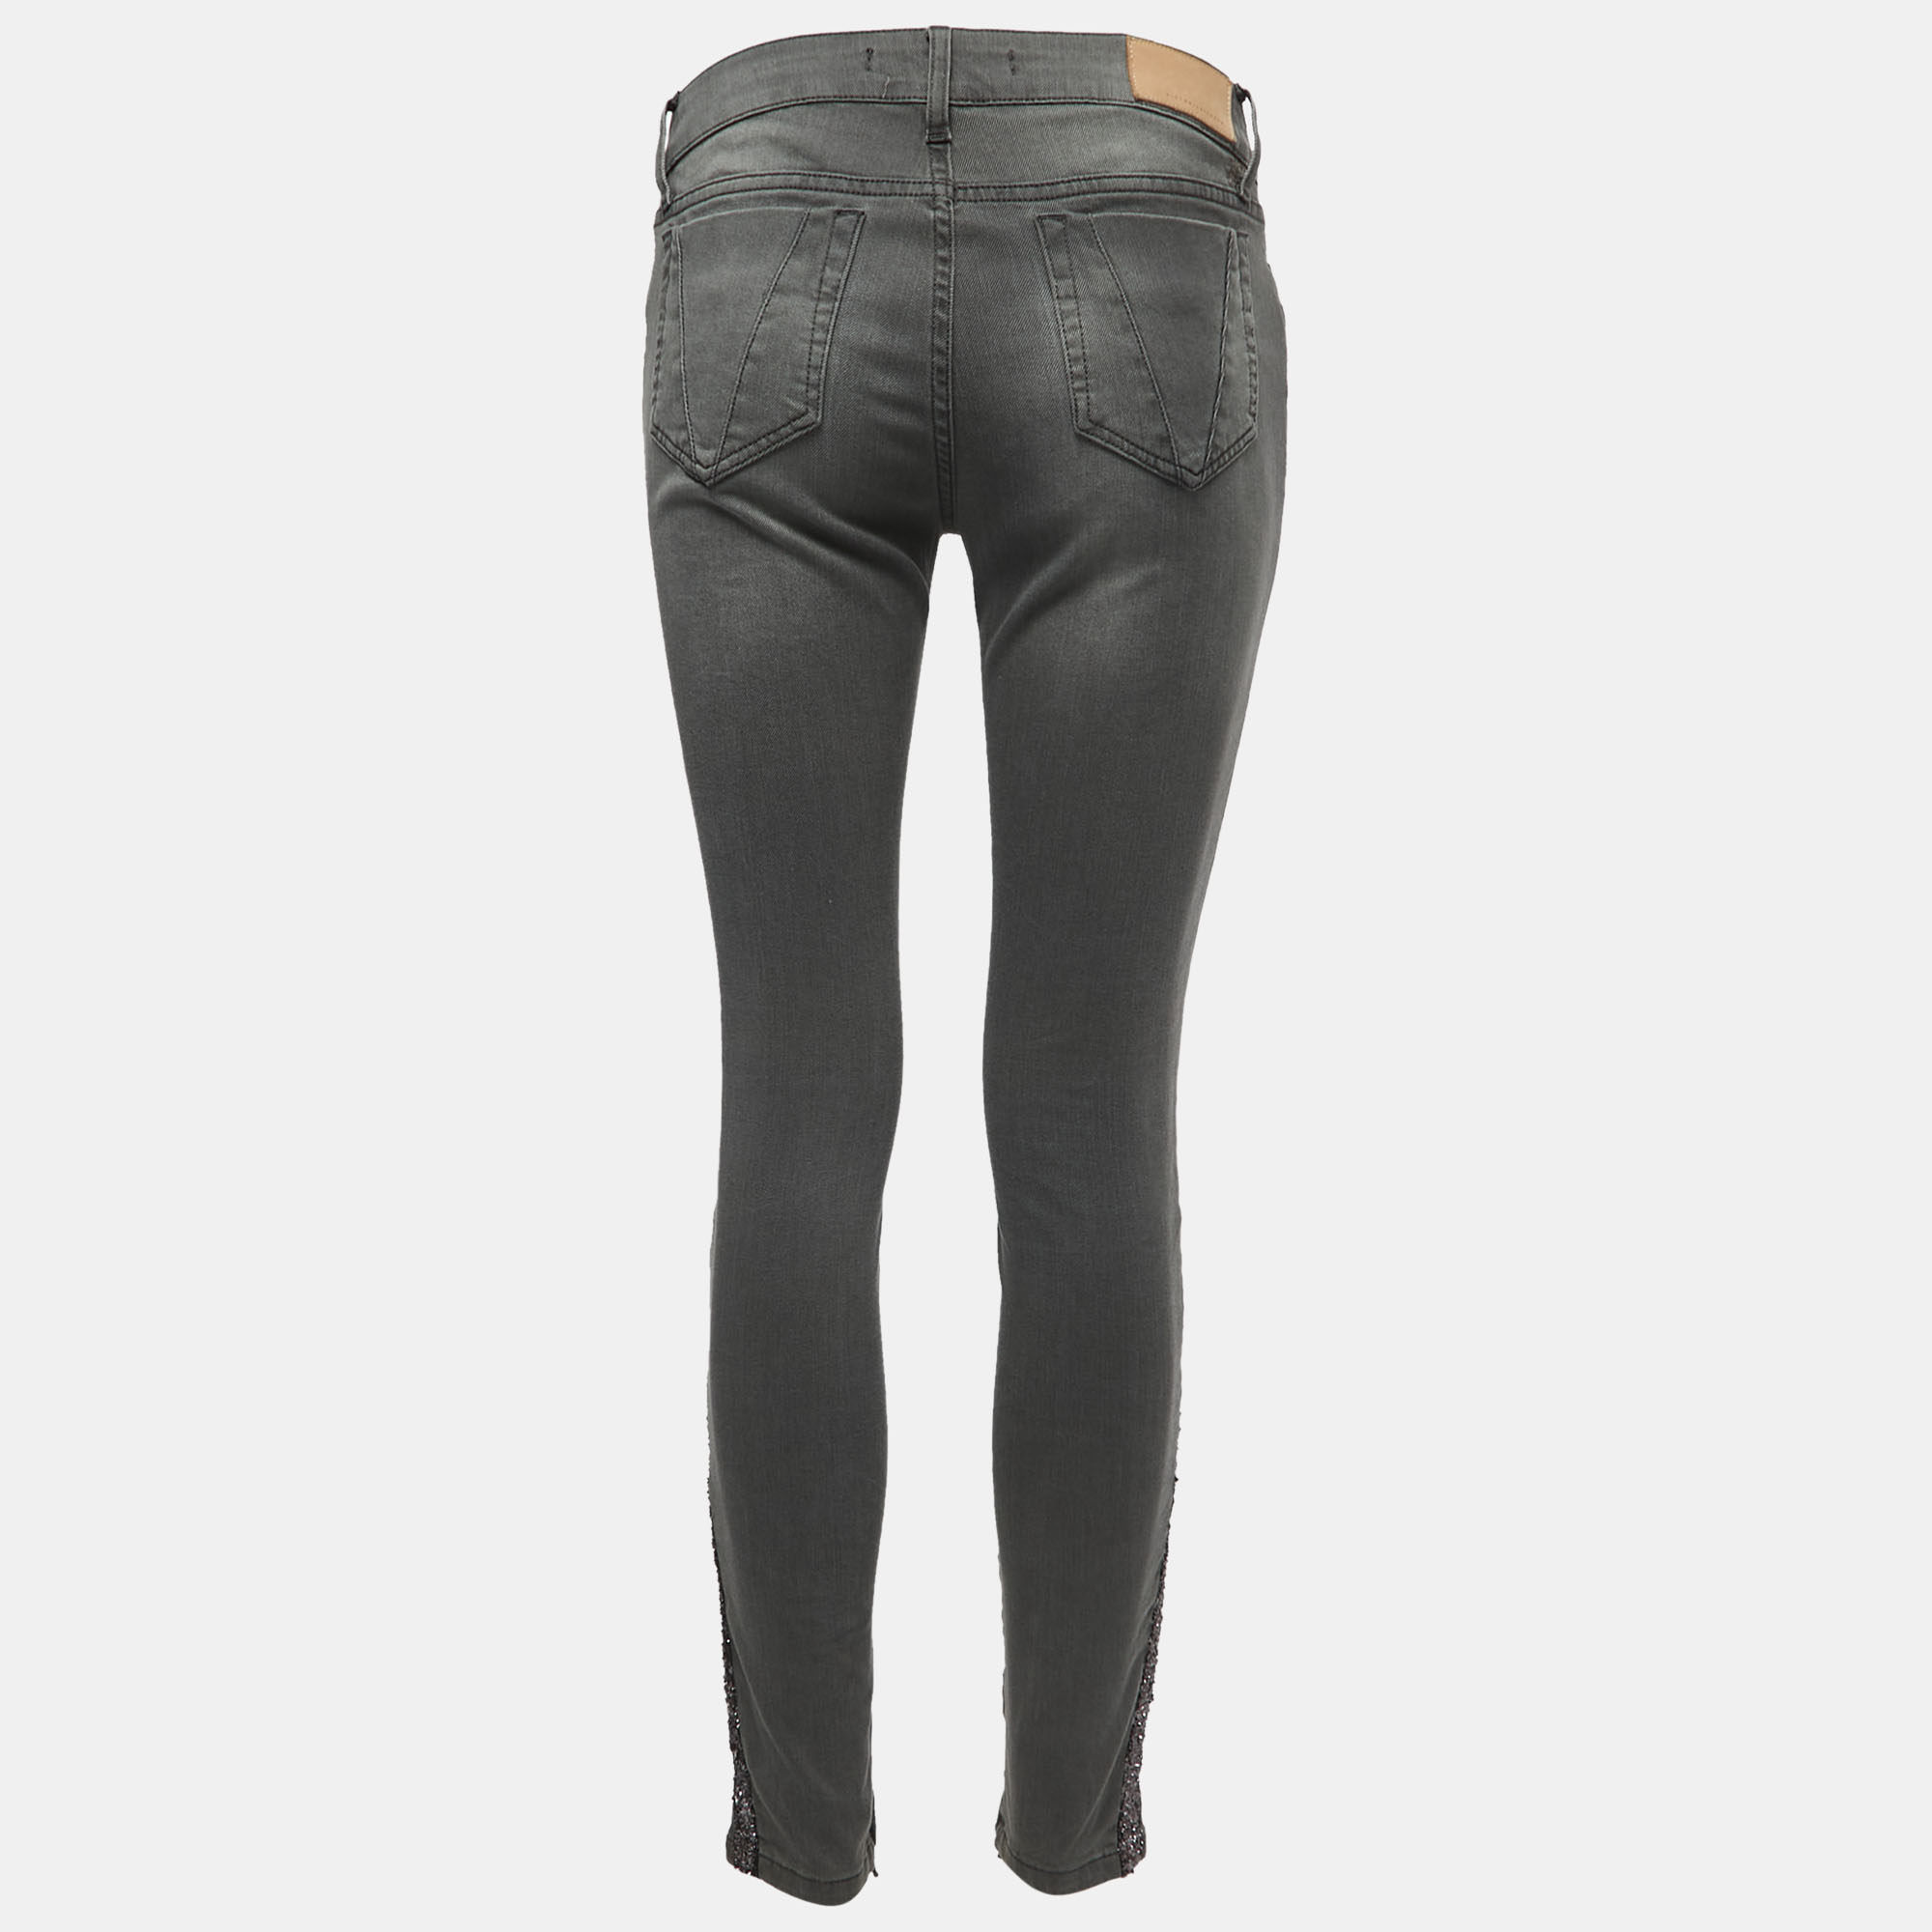 Victoria Beckham Grey Denim Glitter Detail Skinny Jeans M Waist 28